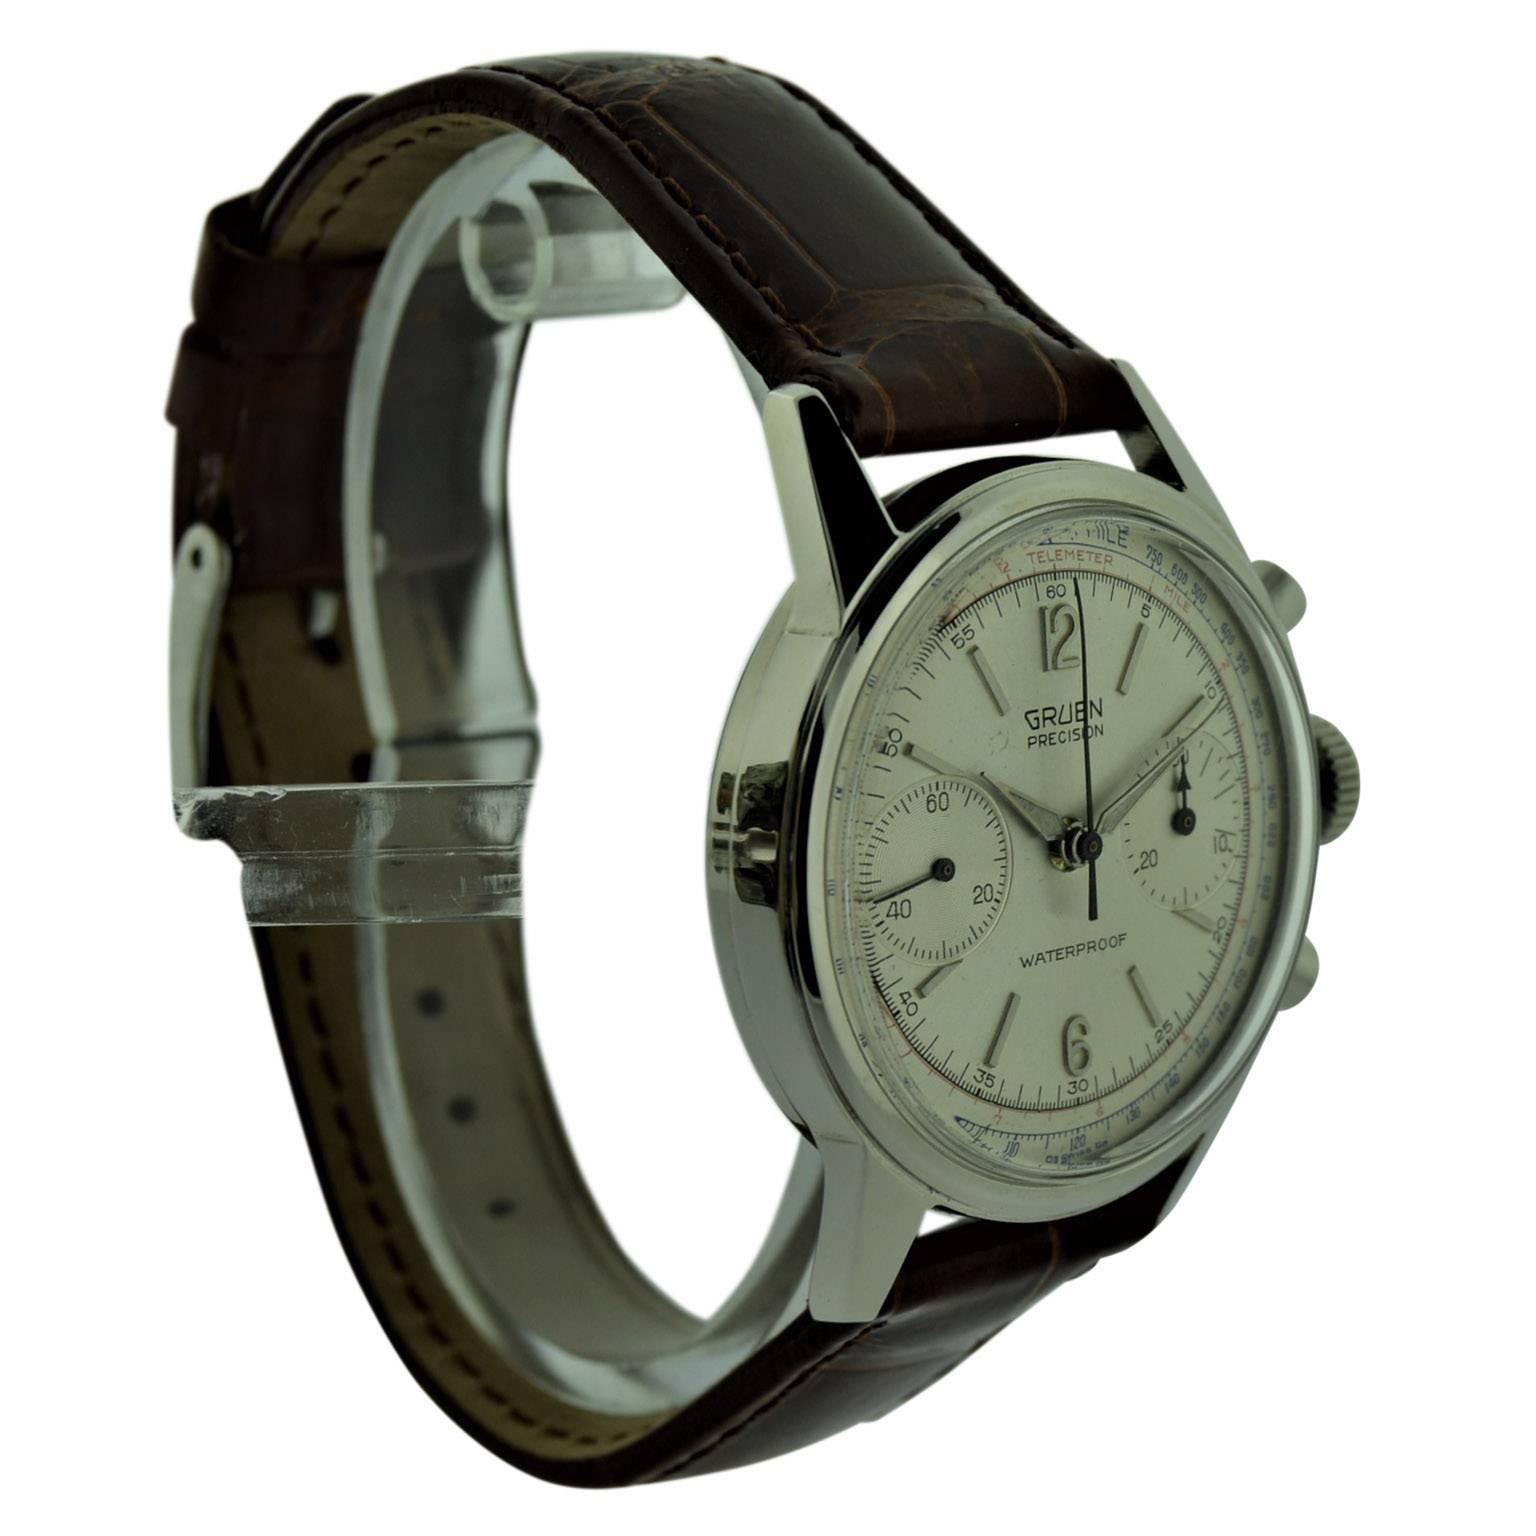 1950's gruen watches